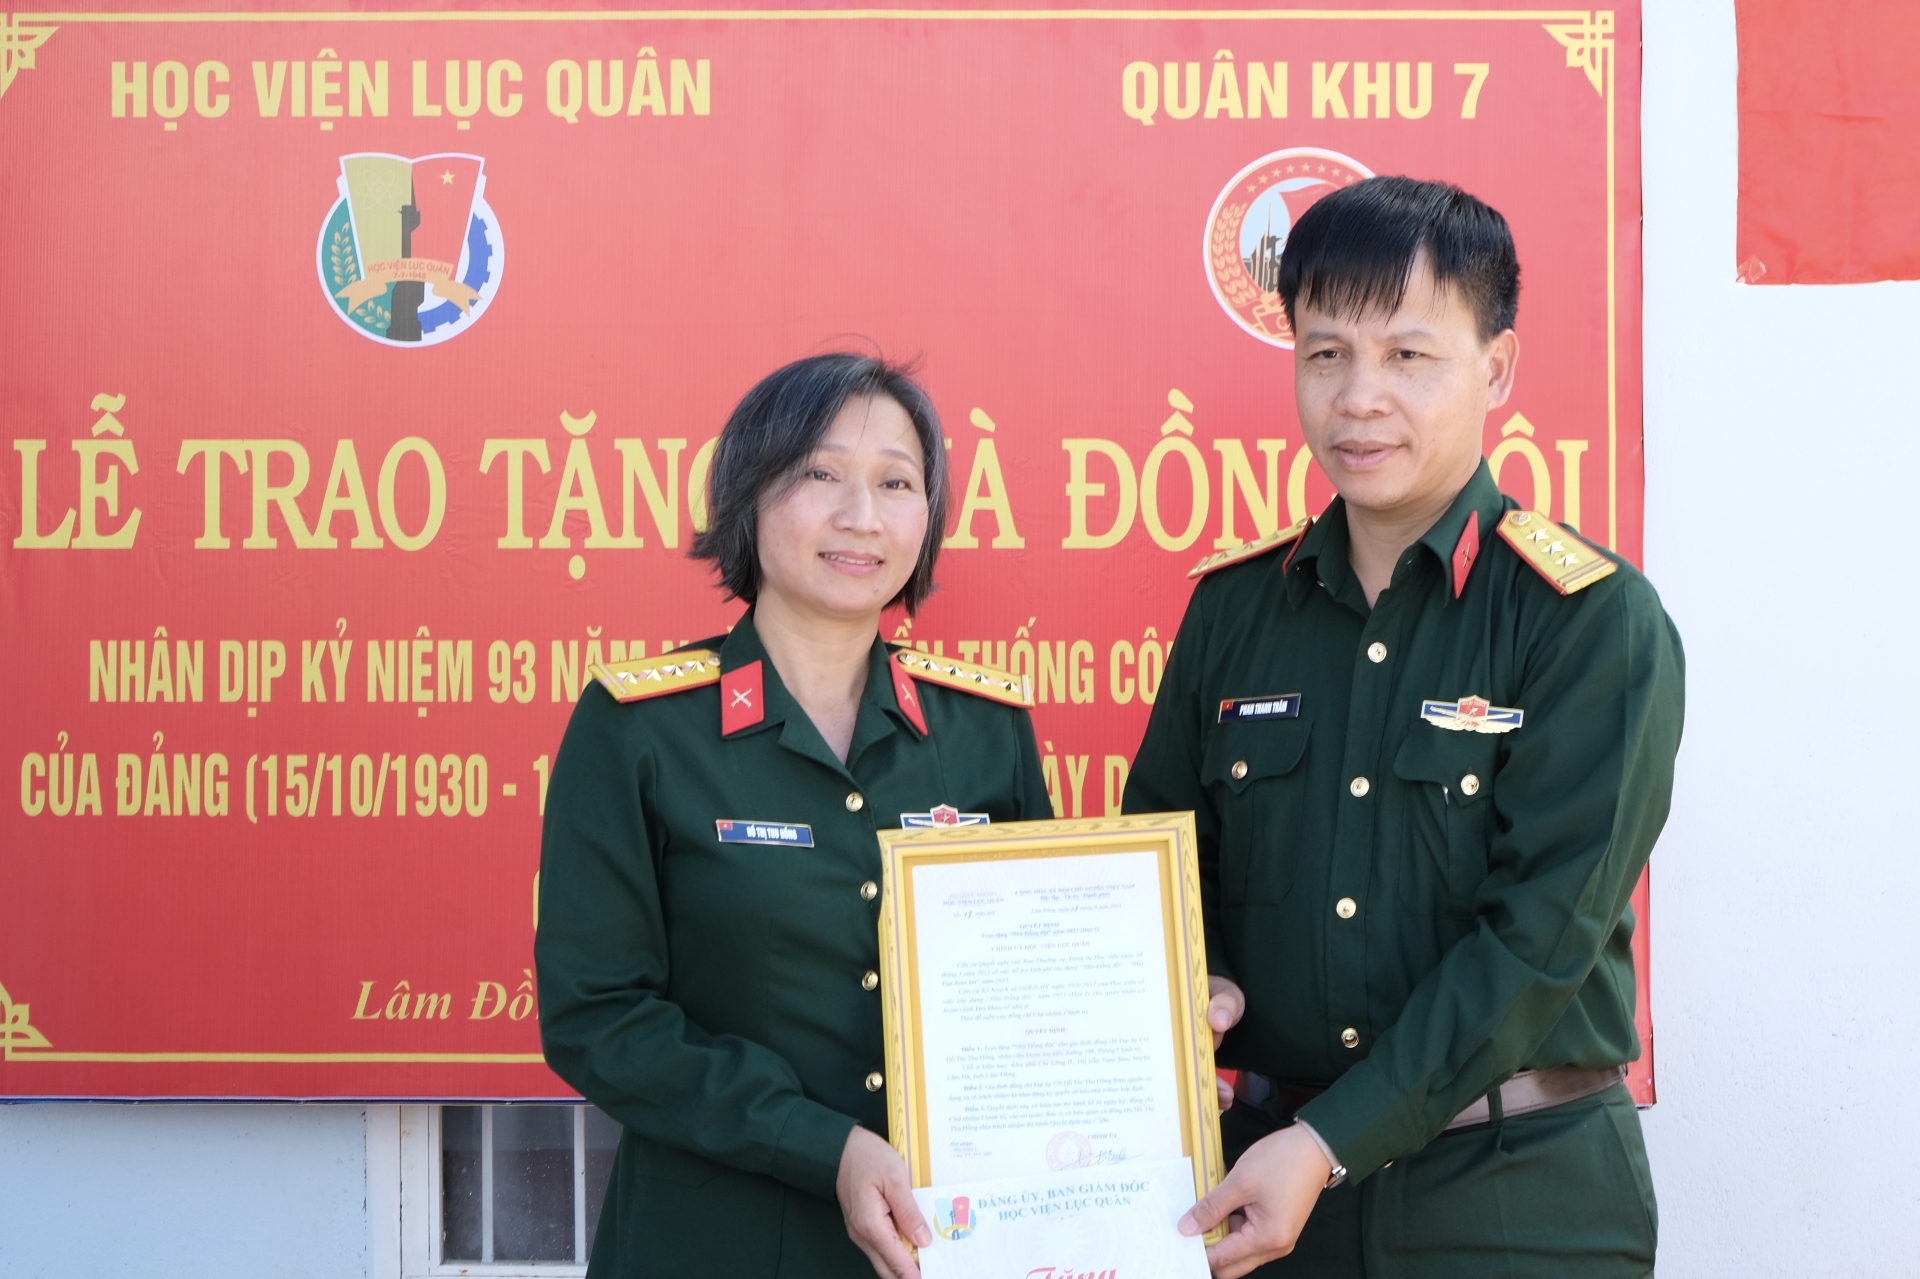 Thượng tá Phan Thanh Trâm, Phó Chủ nhiệm Chính trị Học viện Lục quân trao Quyết định Trao tặng Nhà Đồng đội năm 2023